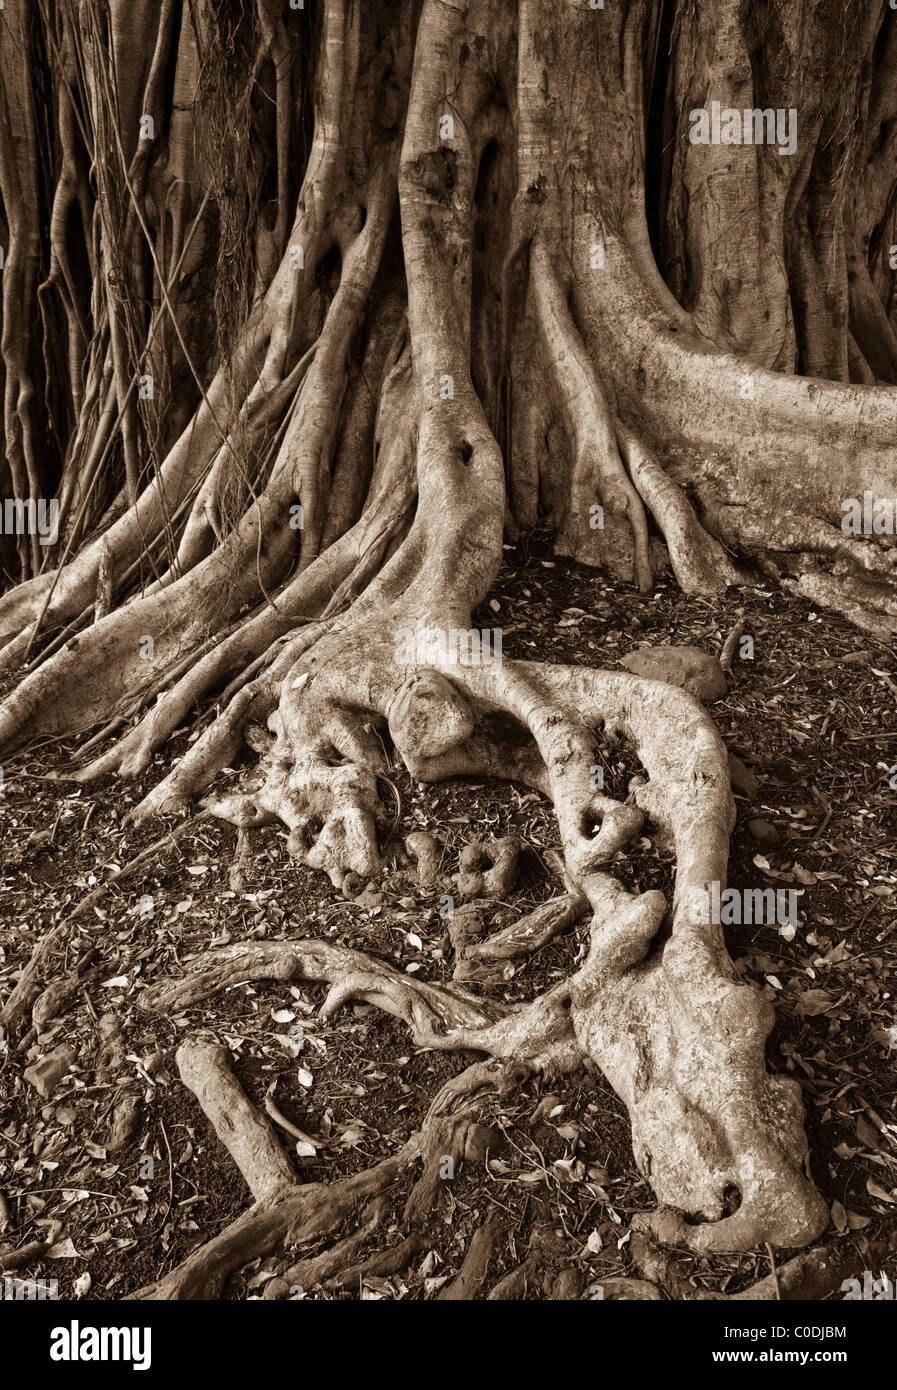 Las raíces del árbol de Banyan, Pipiwai Trail, el Parque Nacional de Haleakala, Distrito Kipahulu Costa Hana, Maui, Hawaii. Foto de stock